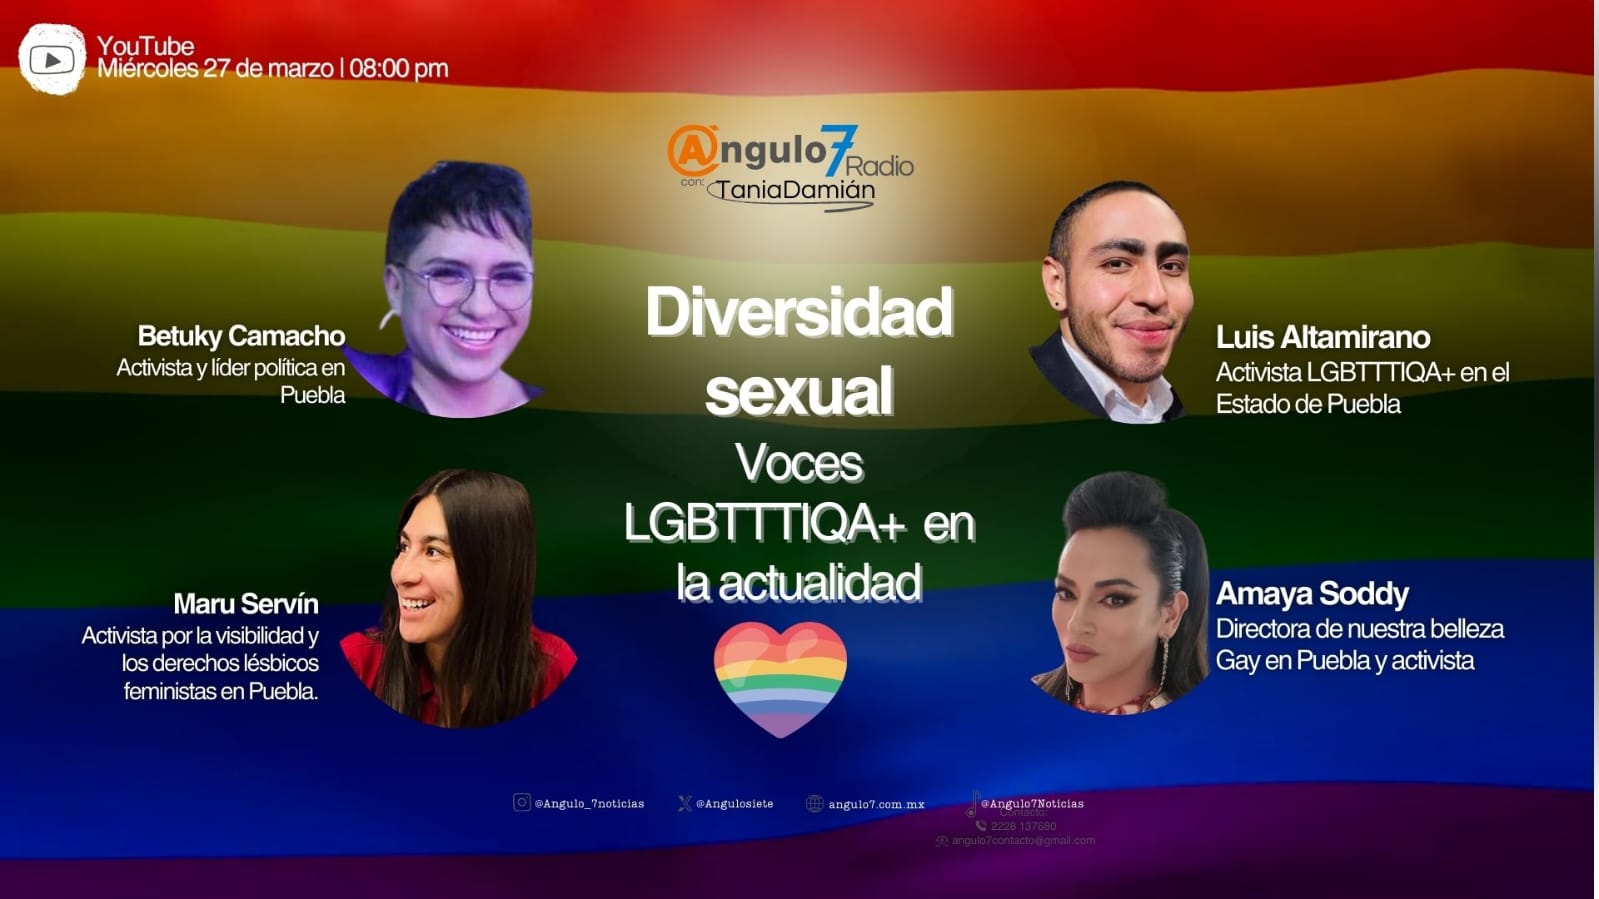 Diversidad sexual en #puebla : Voces #lgbt en Ángulo7Radio | #diversidad #mexico